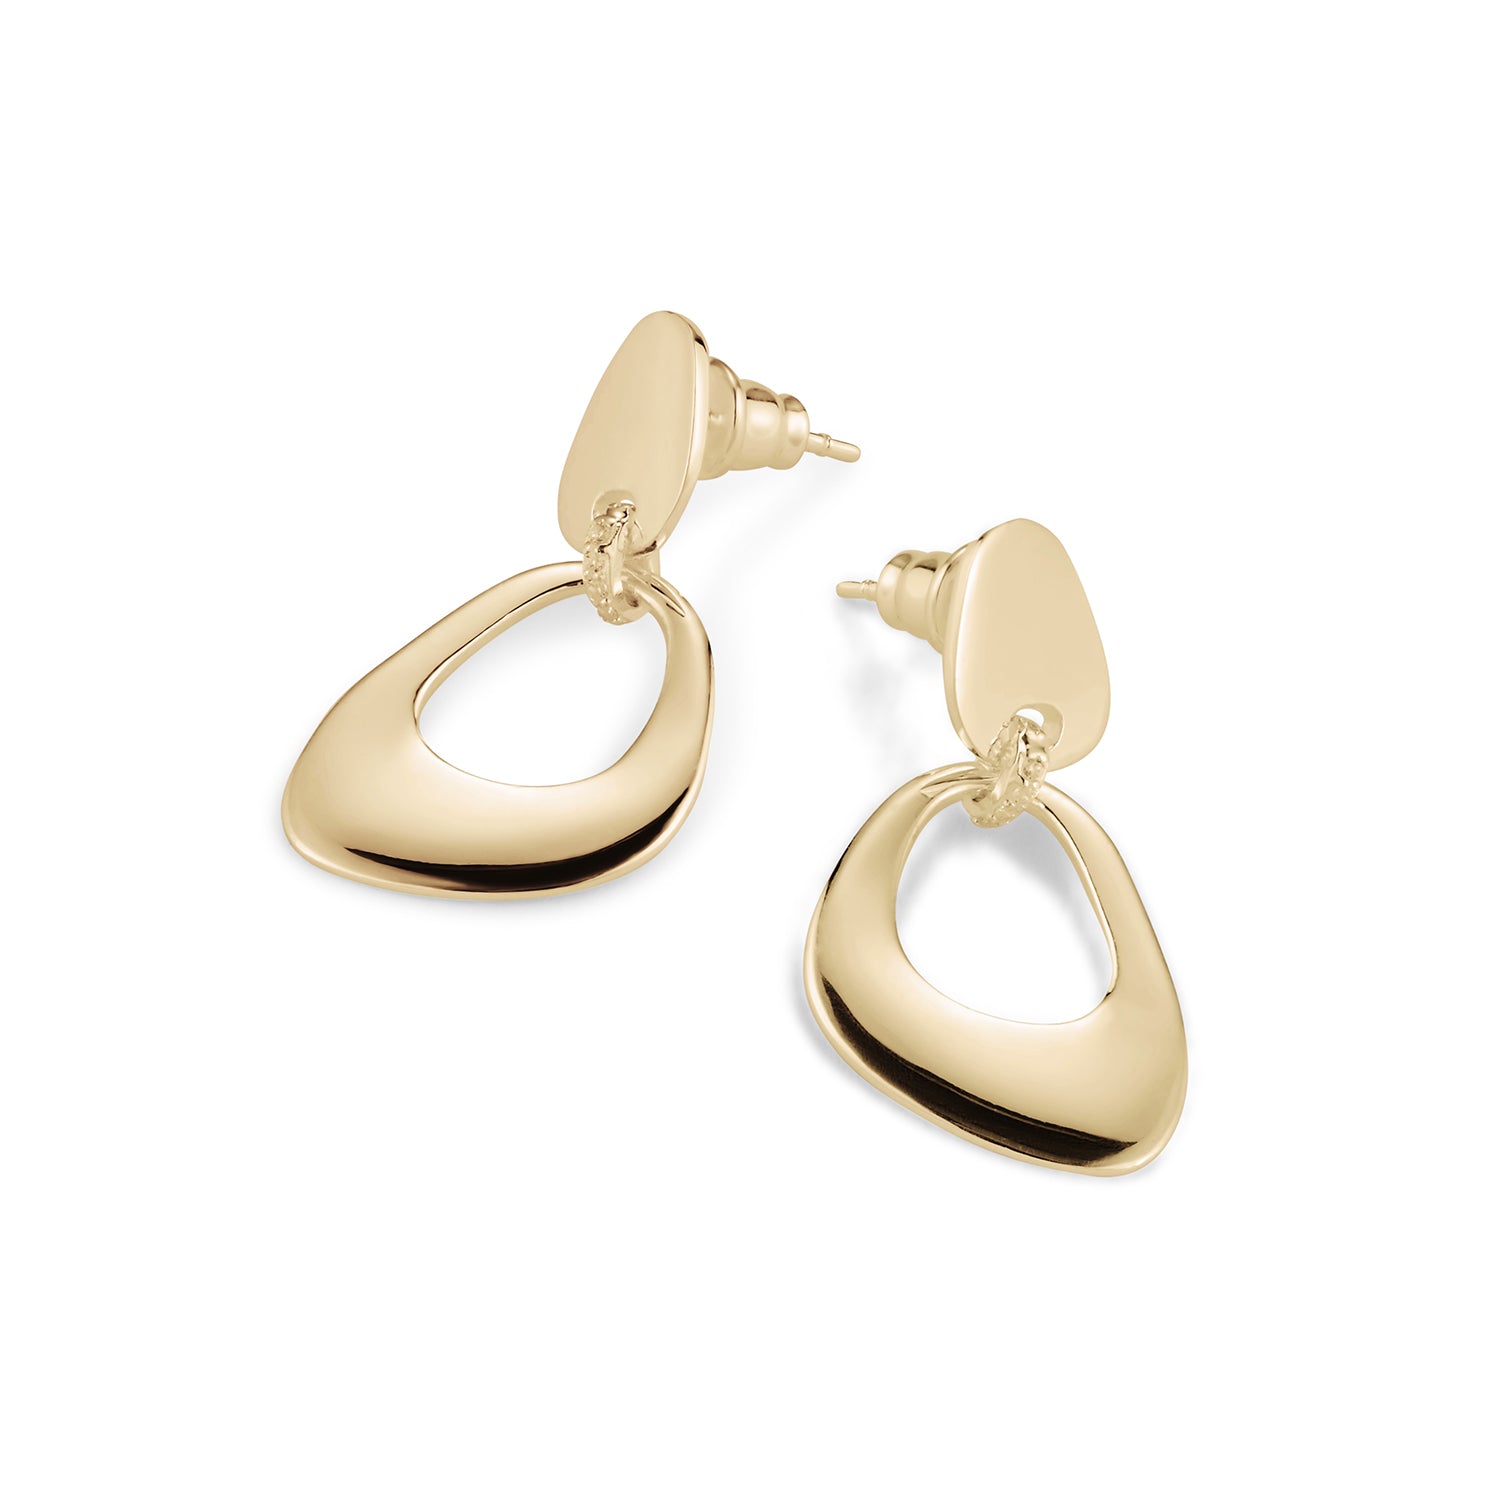 Pebble Drop Earrings - Gold Vermeil